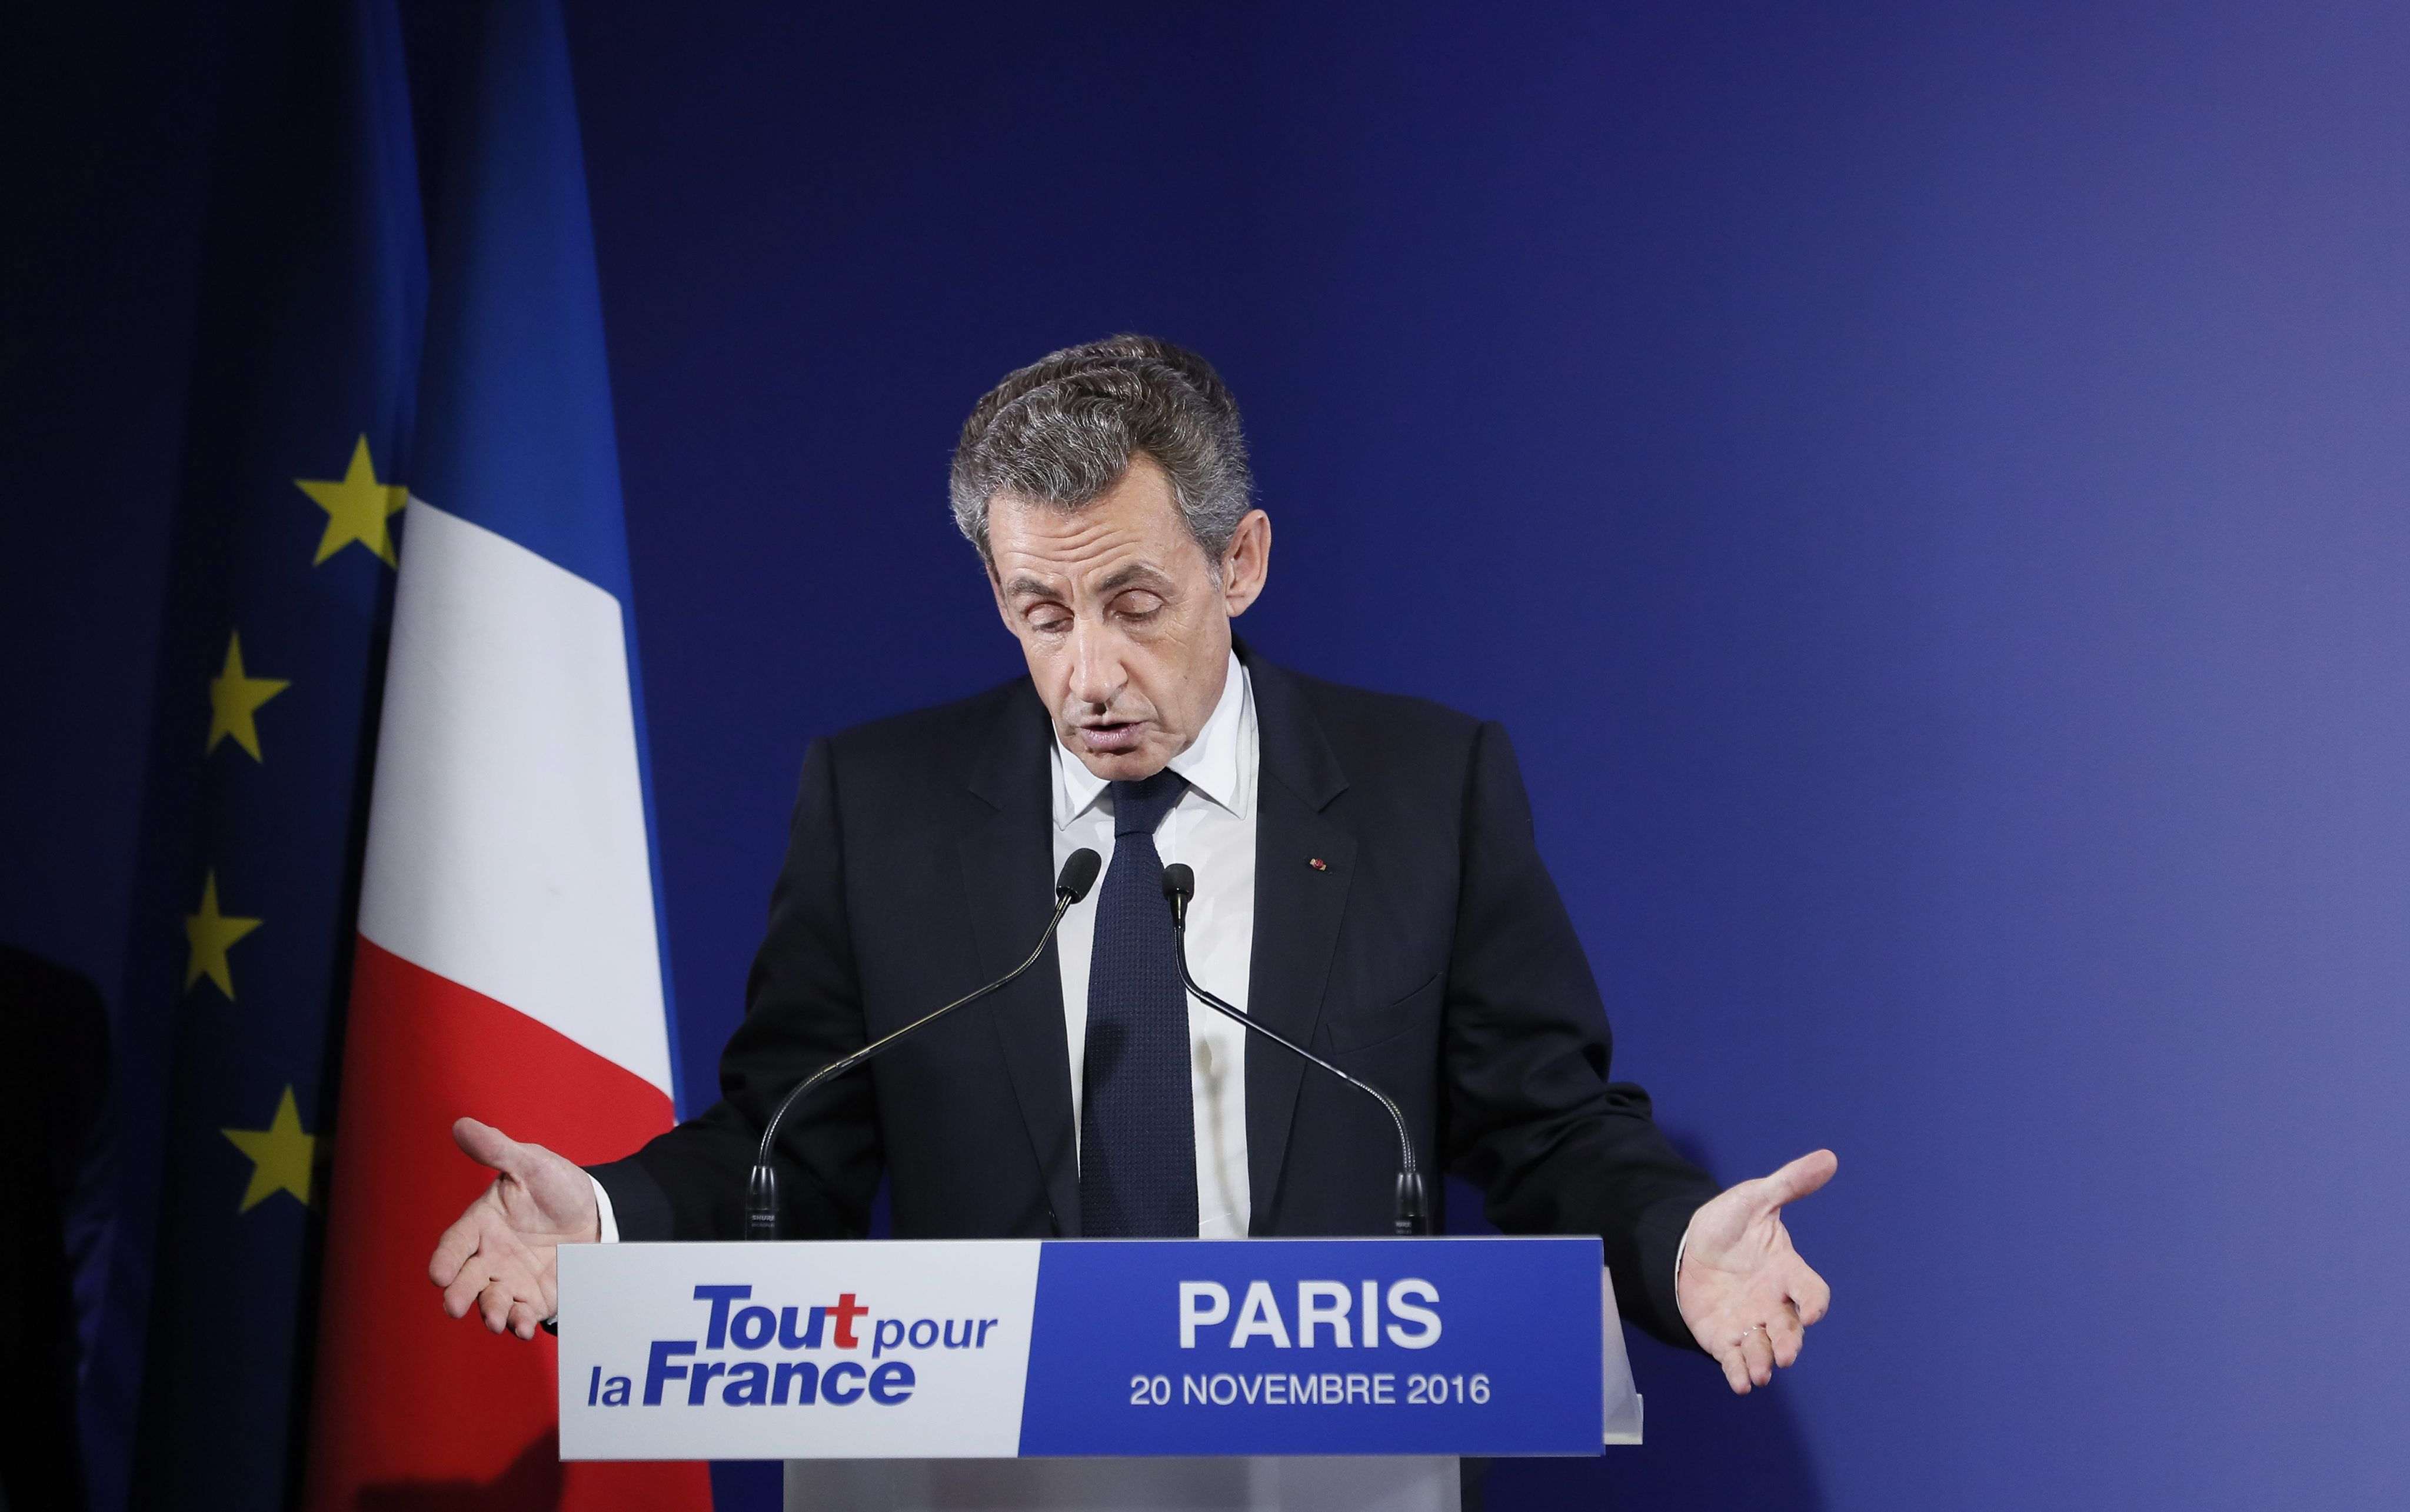 L'expresident francès Nicolas Sarkozy, imputat per associació criminal